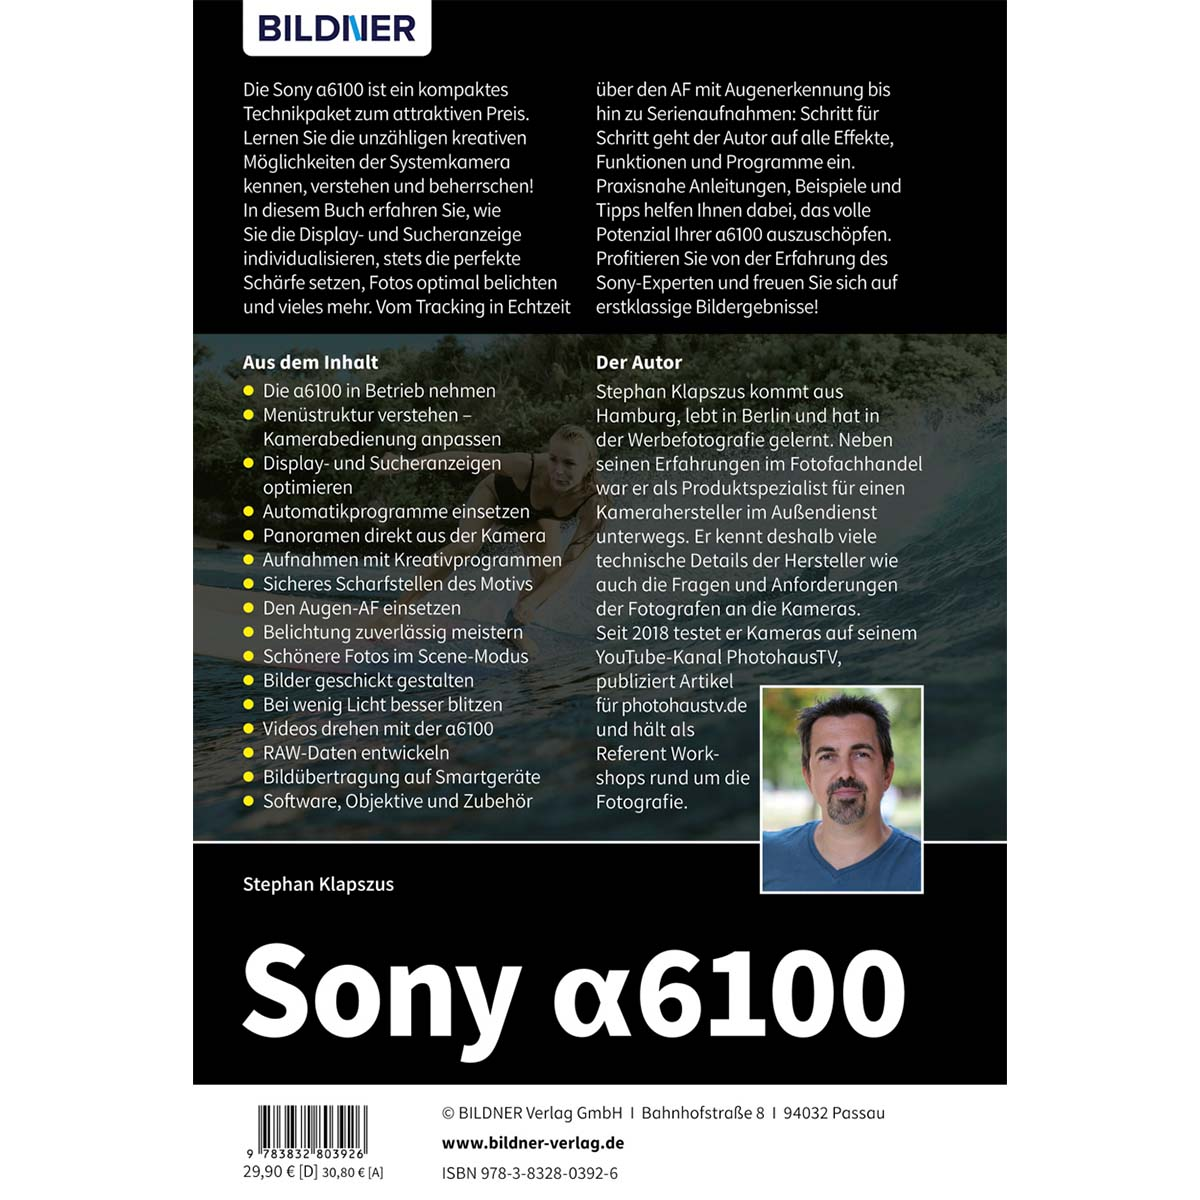 Sony A6100 - Praxisbuch Das zu Kamera! umfangreiche Ihrer